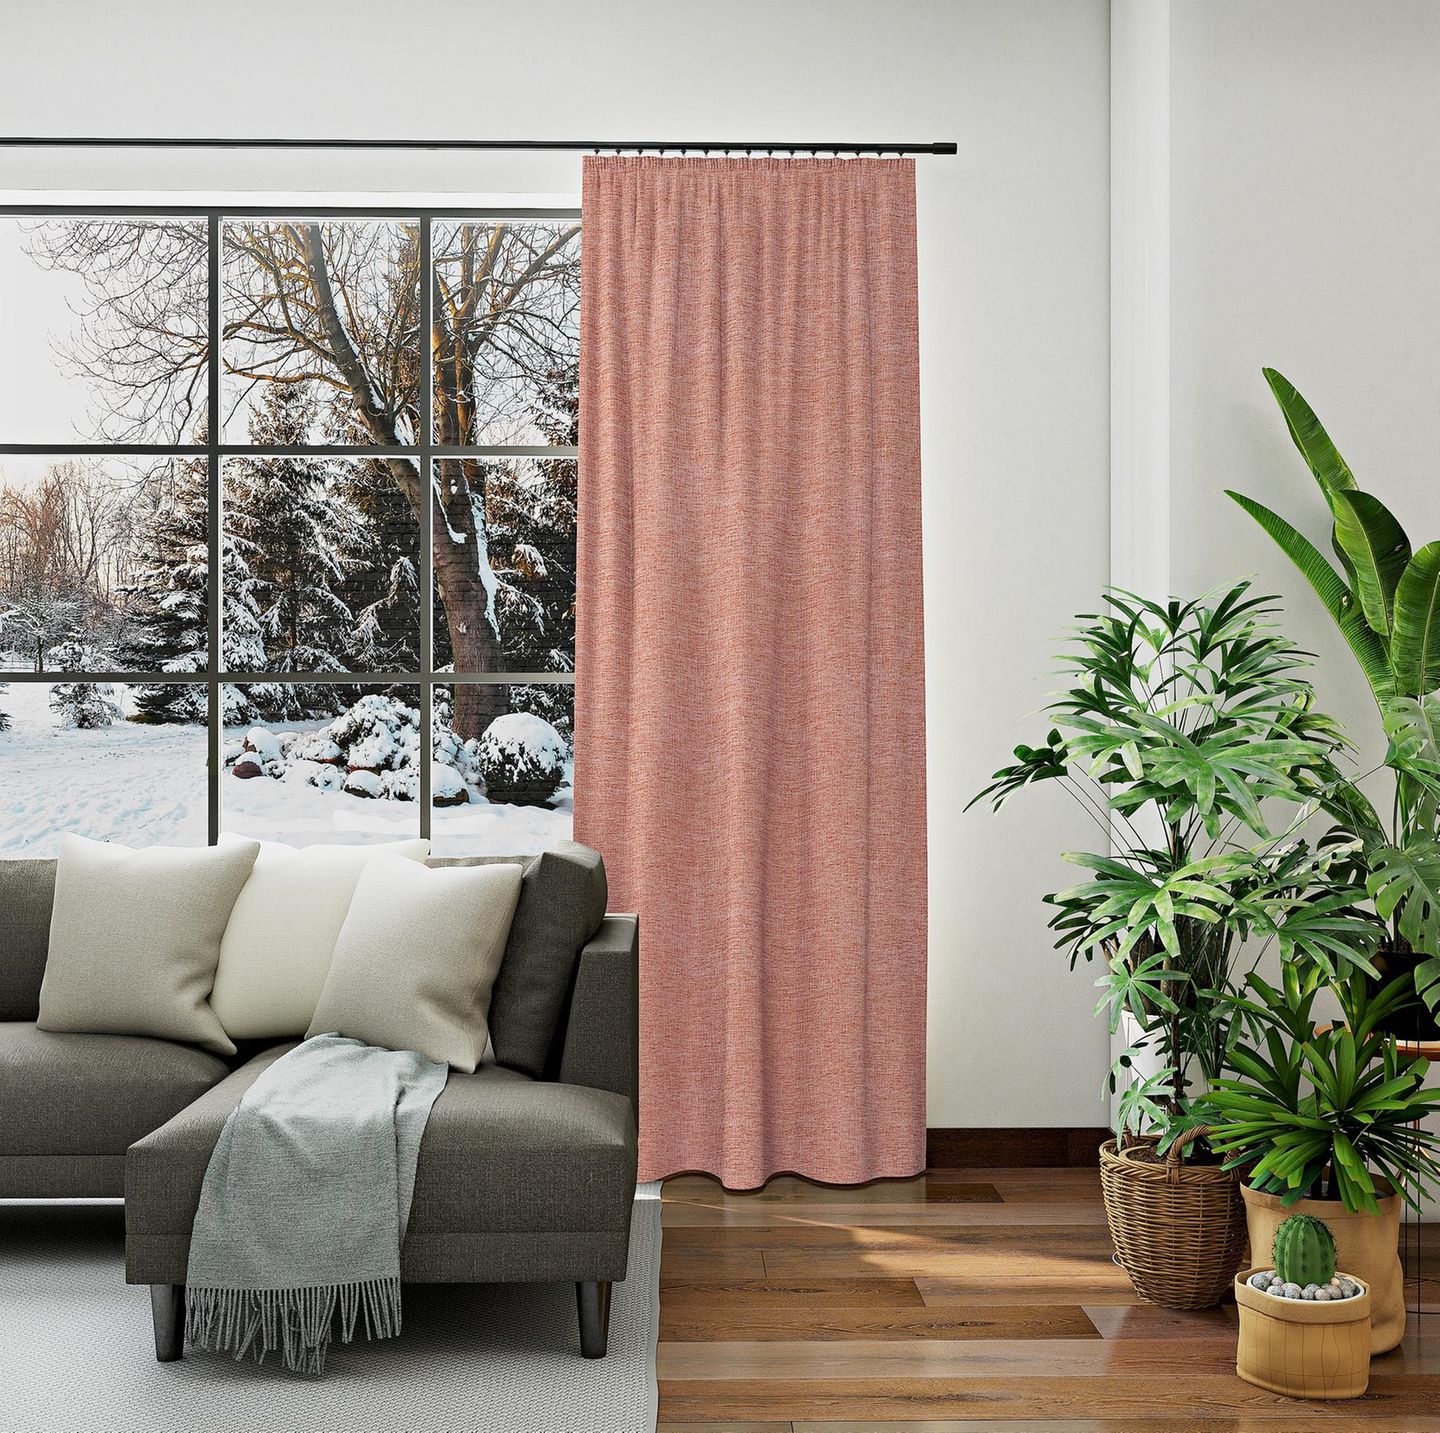 Roséfarbener Thermovorhang im Wohnzimmer neben einem Fenster mit winterlichem Ausblick